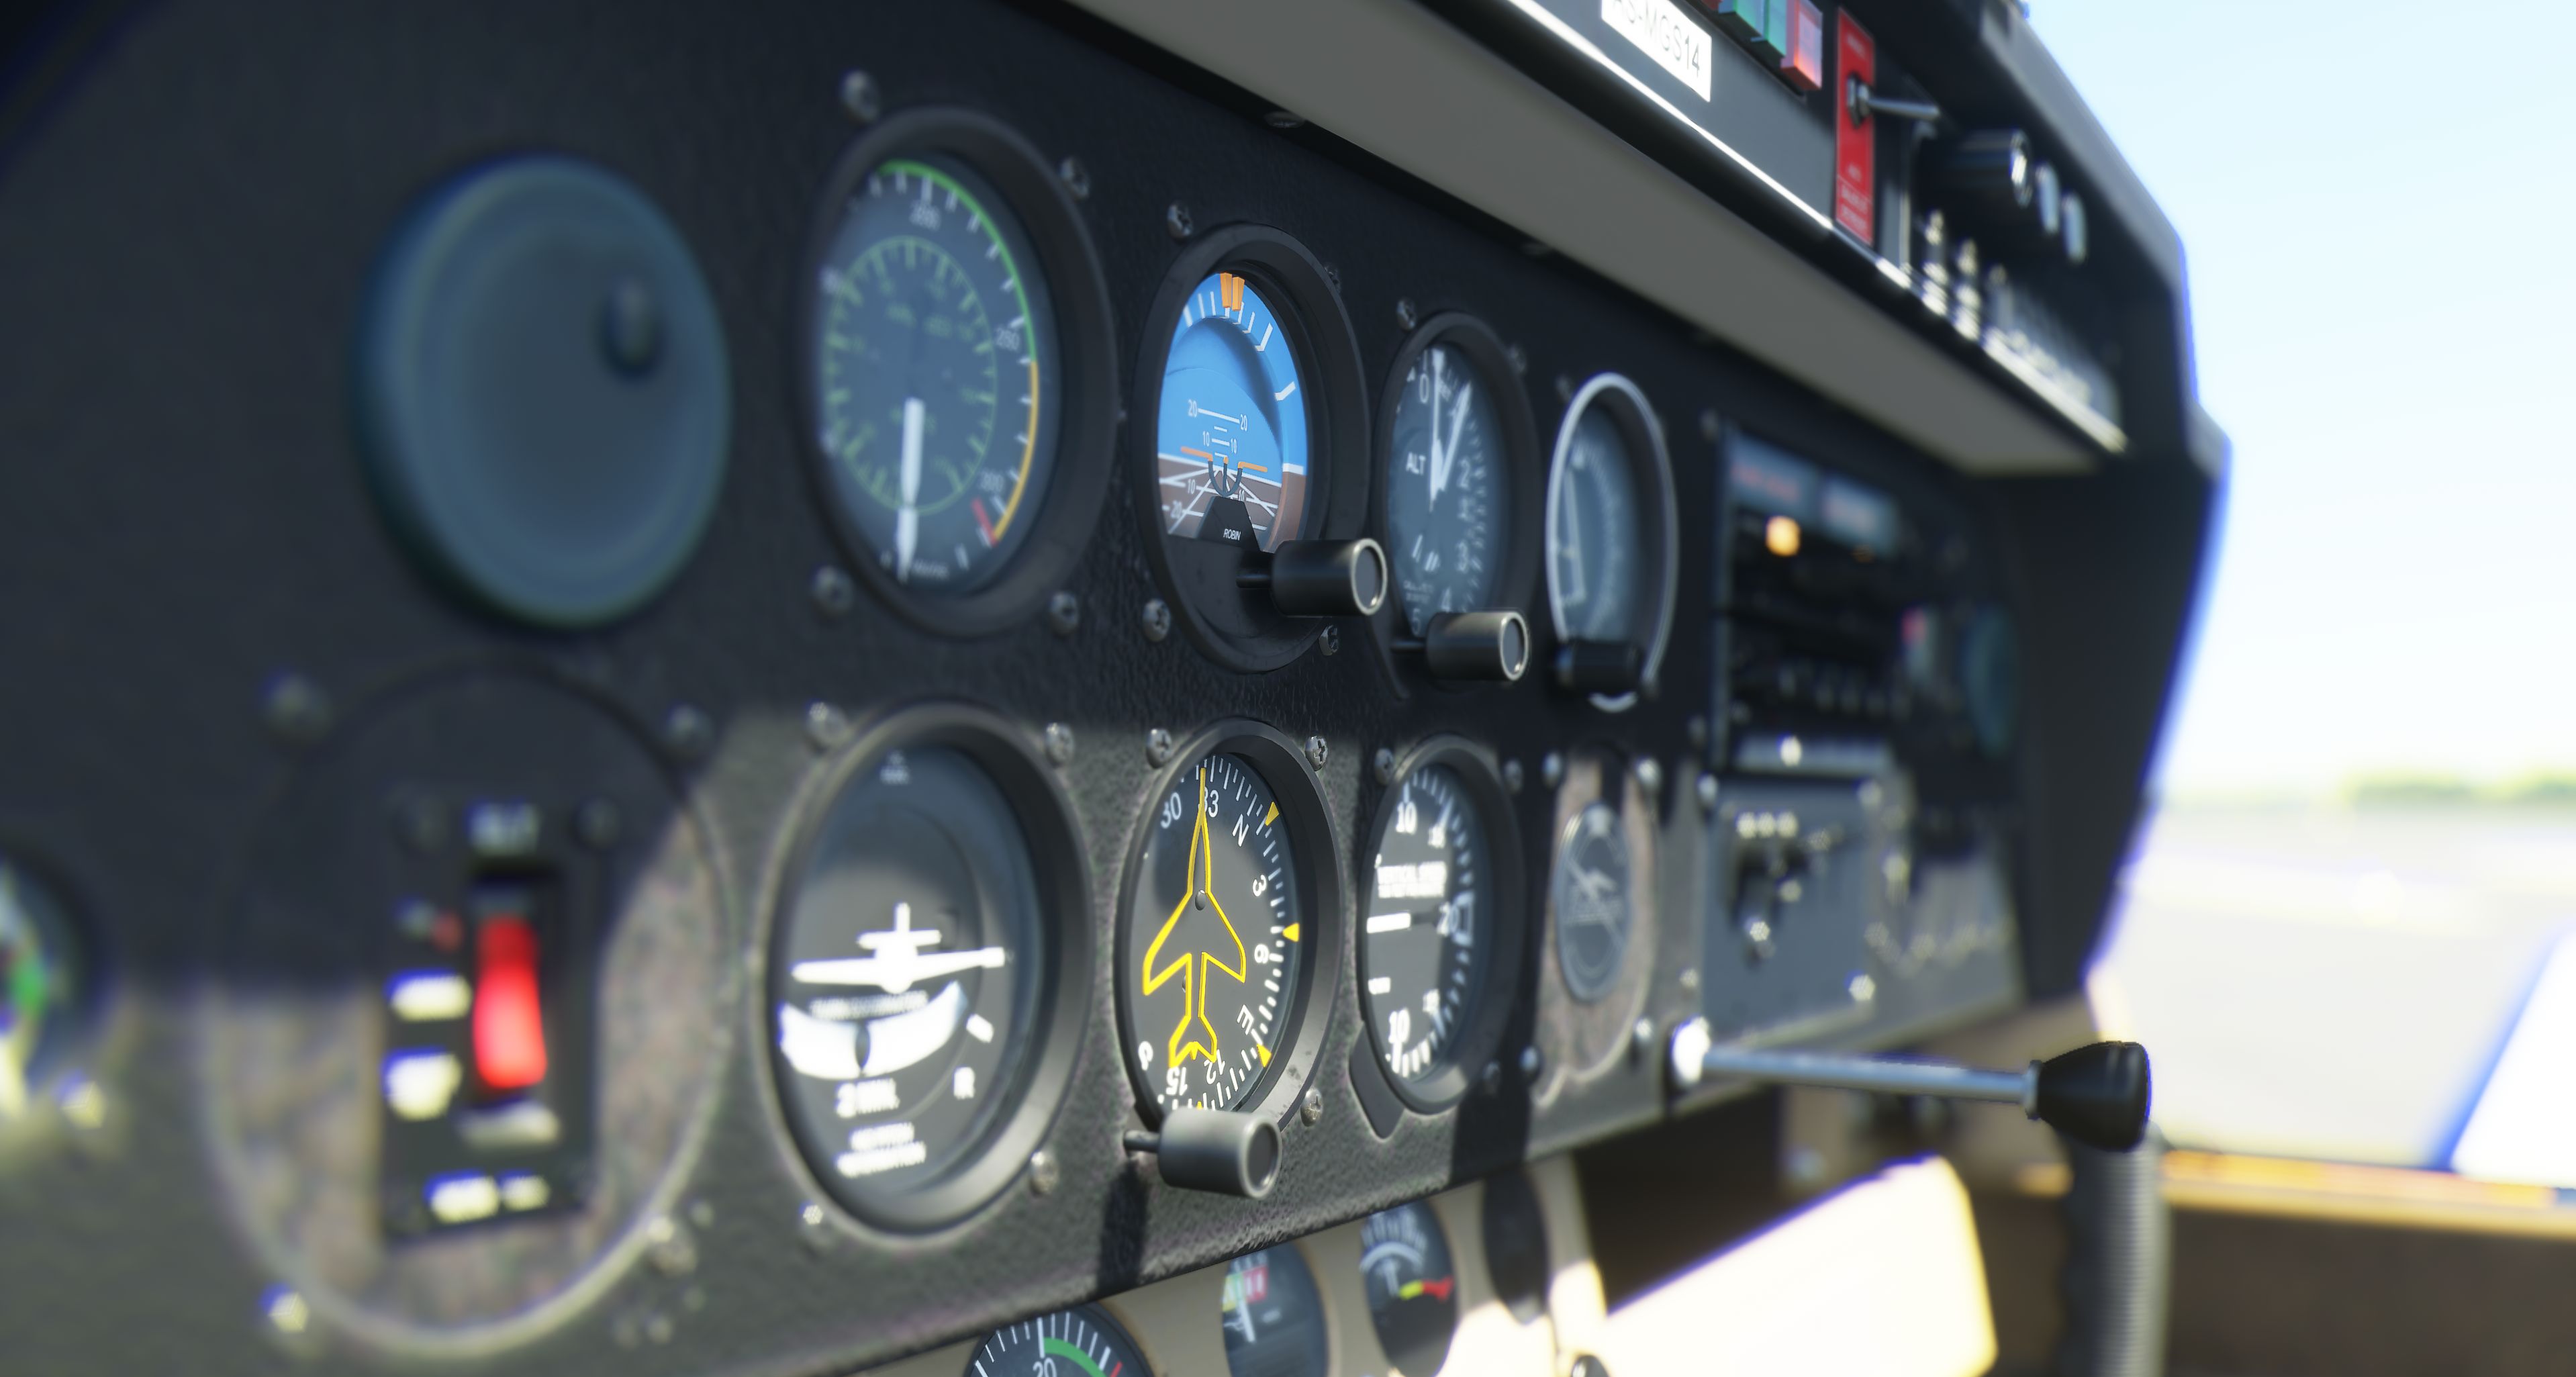 Journal du développement de juillet pour Microsoft Flight Simulator 2020 disponible